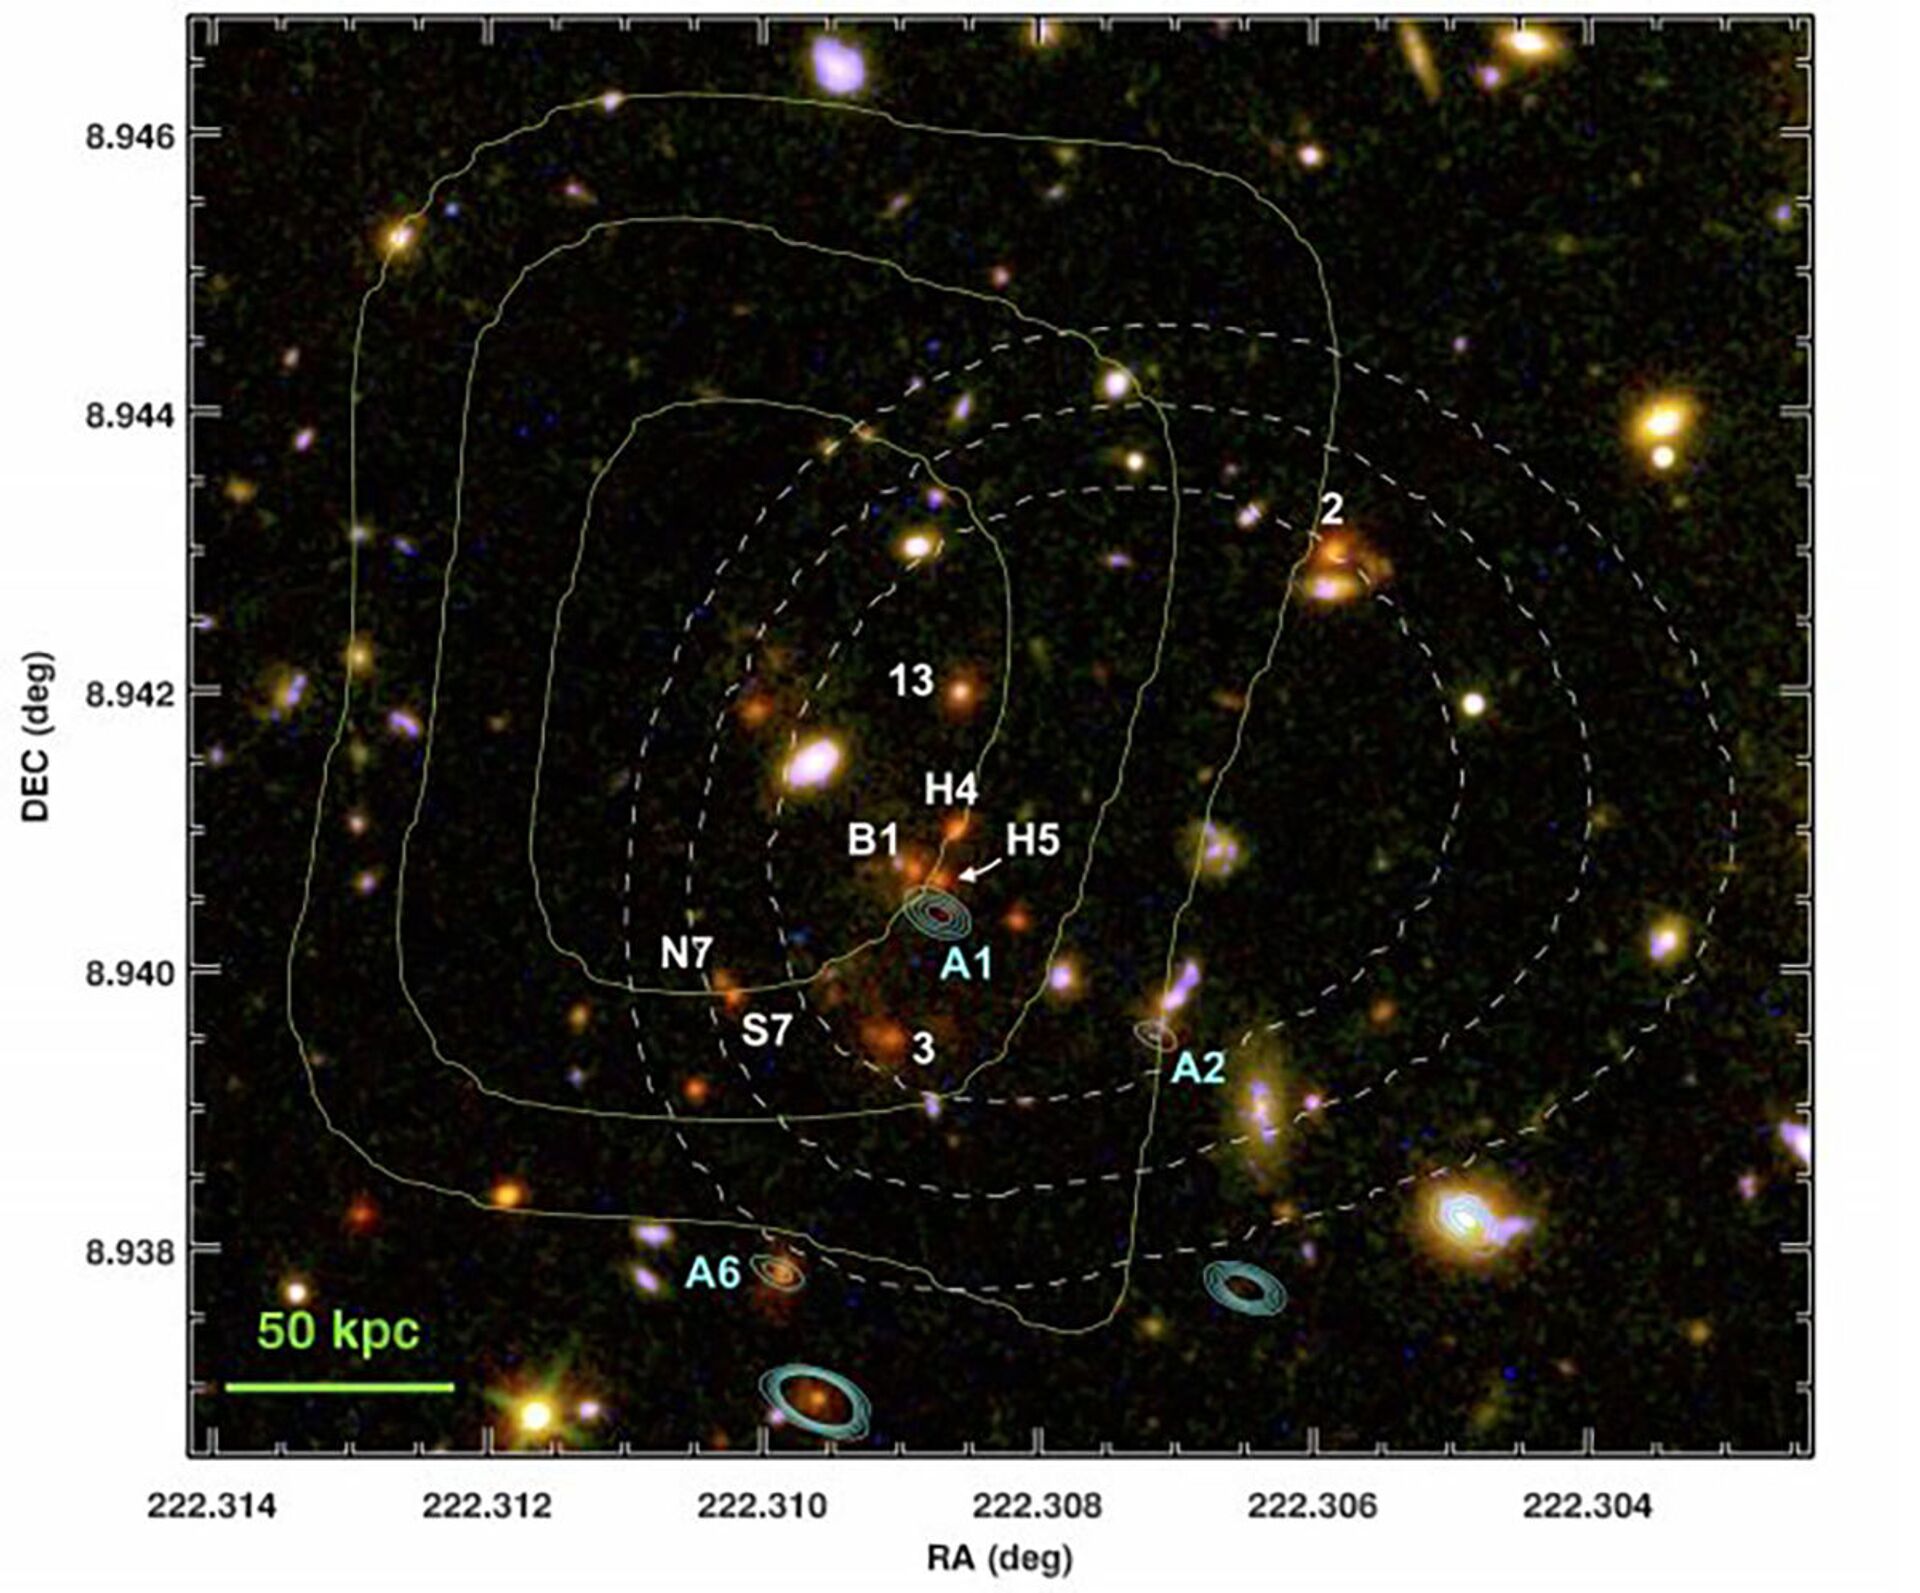 Identificados radiojatos em aglomerado de galáxias que ajudariam a entender evolução do Universo - Sputnik Brasil, 1920, 03.03.2021